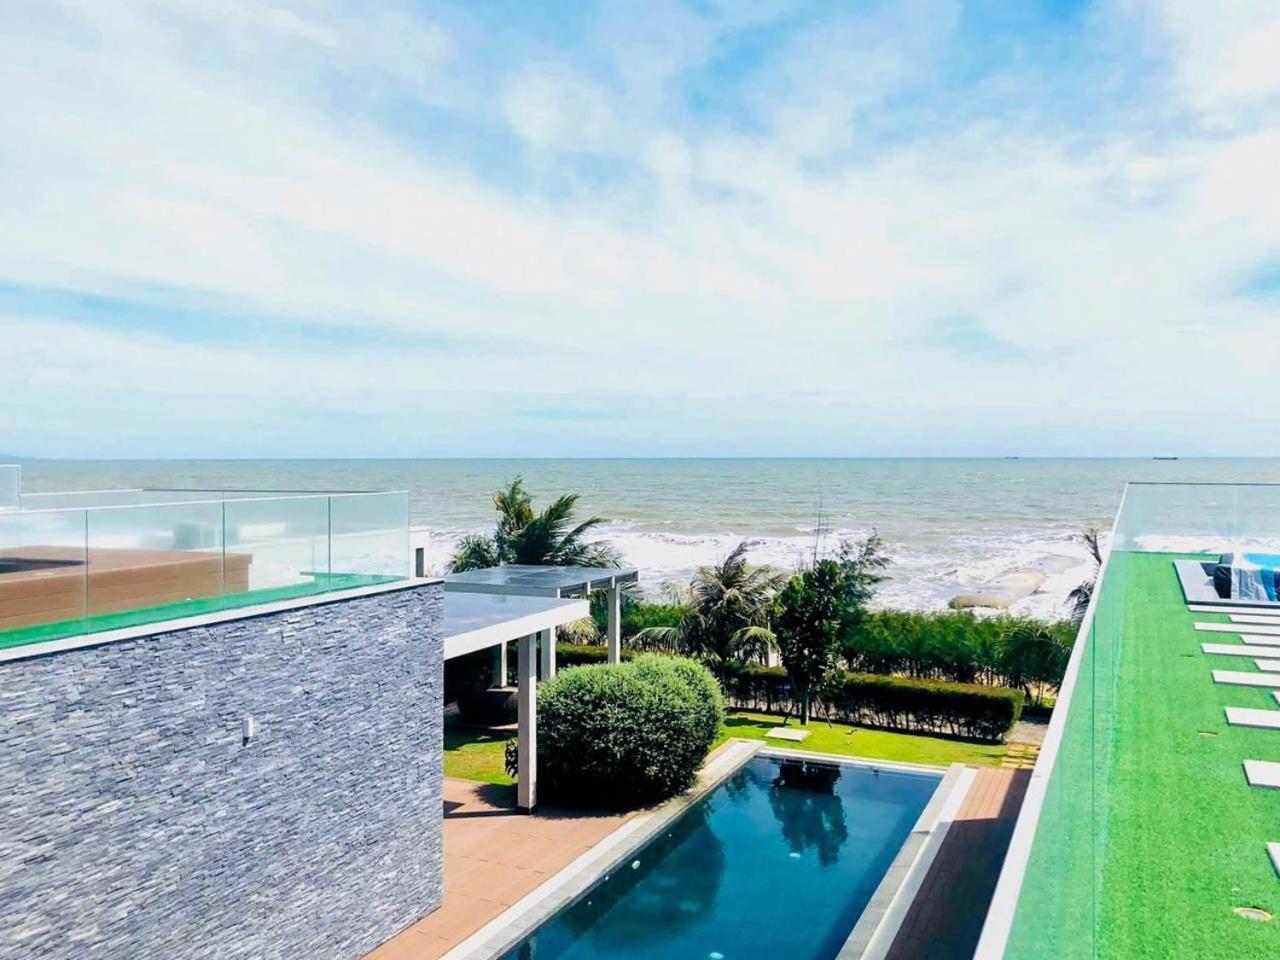 Oceanami Villas & Beach Club Long Hai At 1, 3, 4 Bedroom & 5, 6 Bedroom Beachfront Private Pool エクステリア 写真